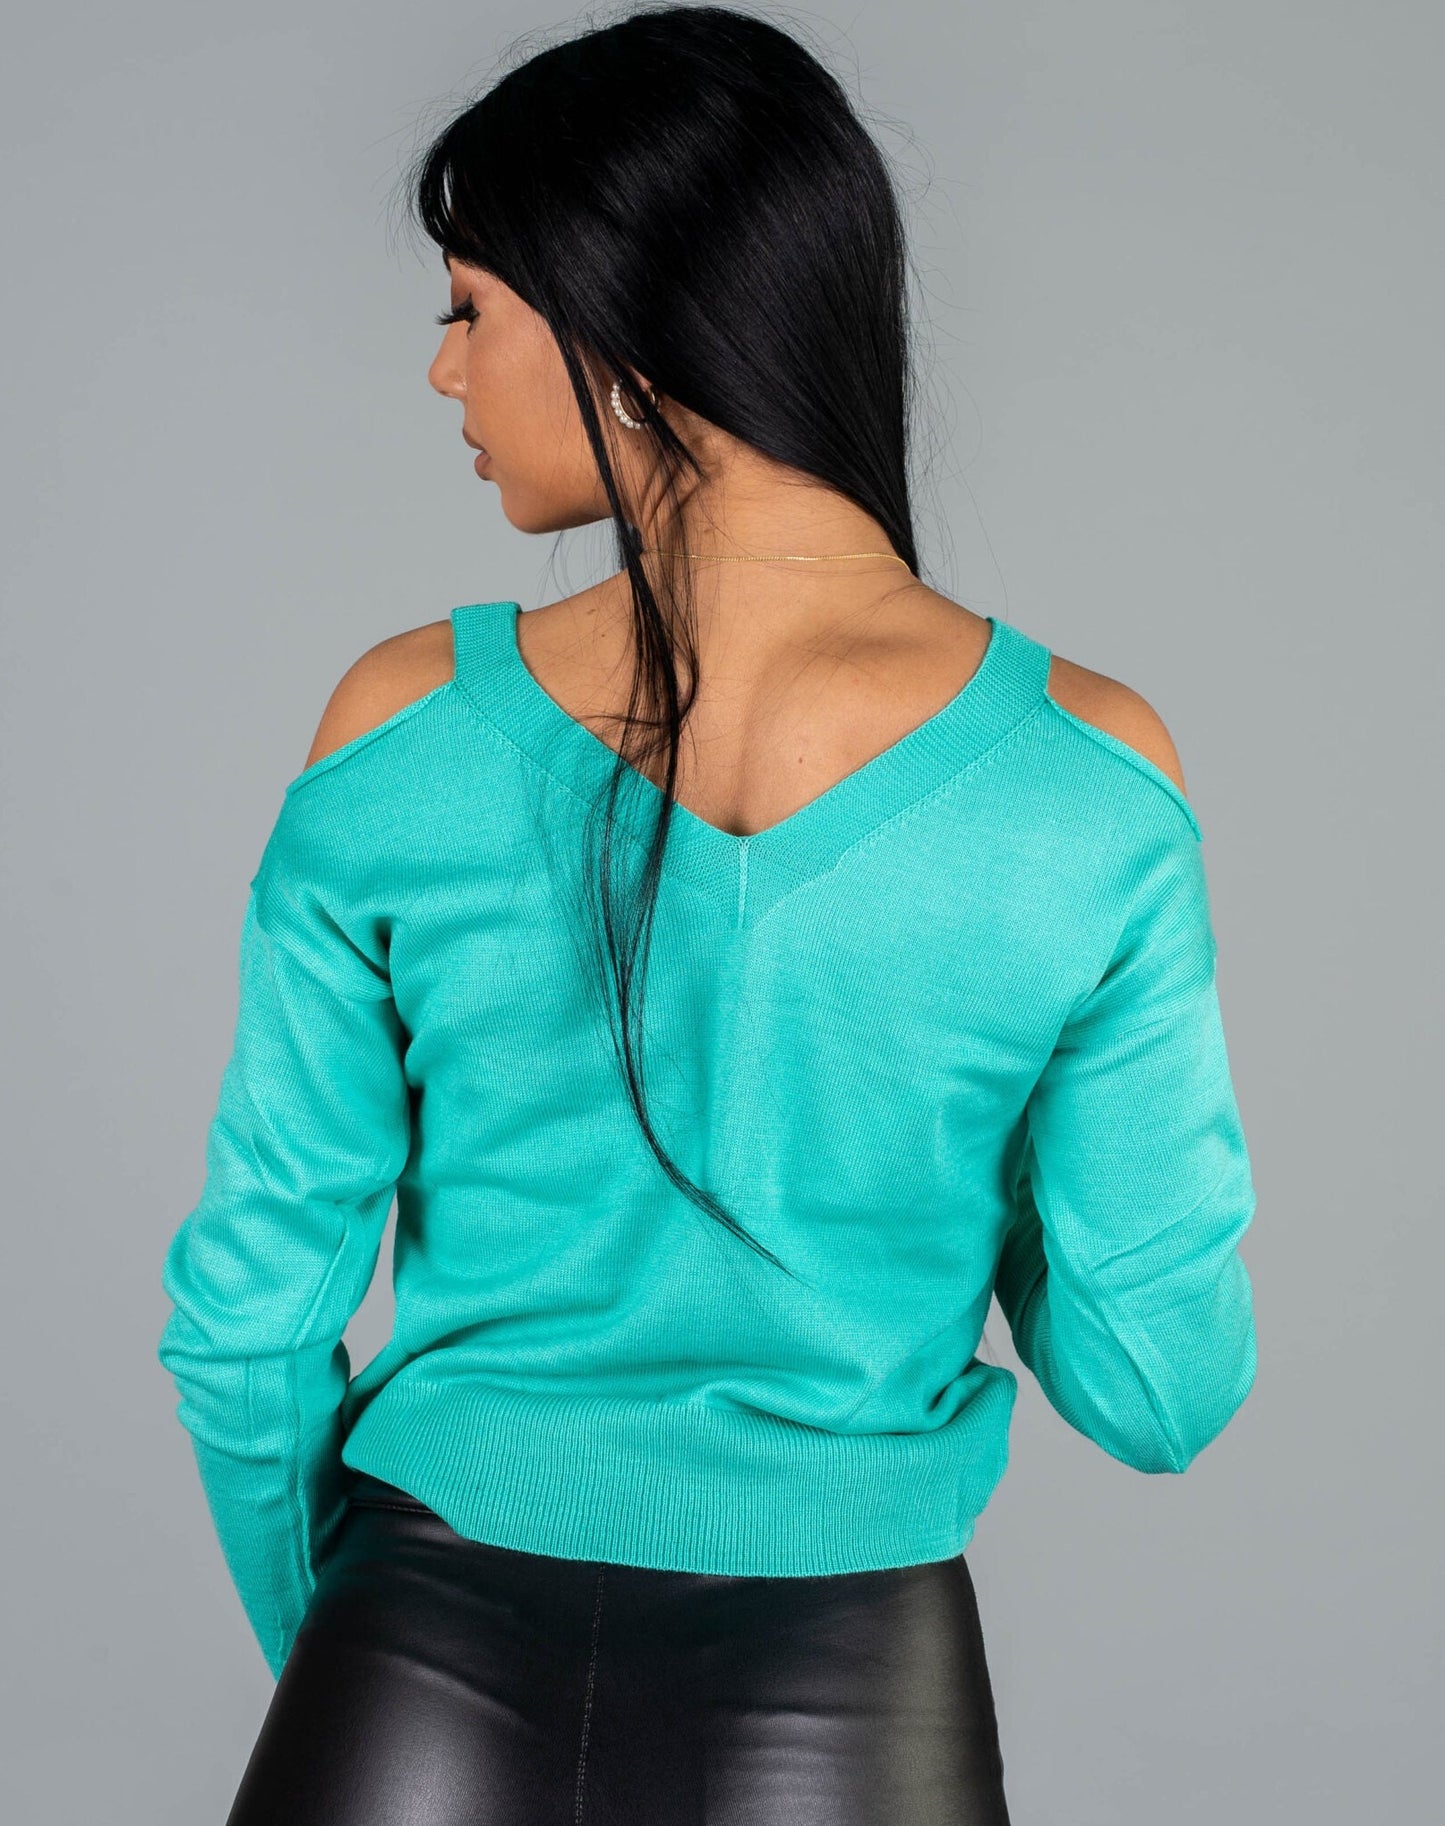 Дамска блуза DILGERMA  https://bvseductive.com/products/дамска-блуза-dilgerma  100% акрил ефектна дамска блуза в цвят мента изработена от изклучително фино плетиво с шпиц деколте и голо рамо блузата се комбинира лесно модерно предложение за ежедневието